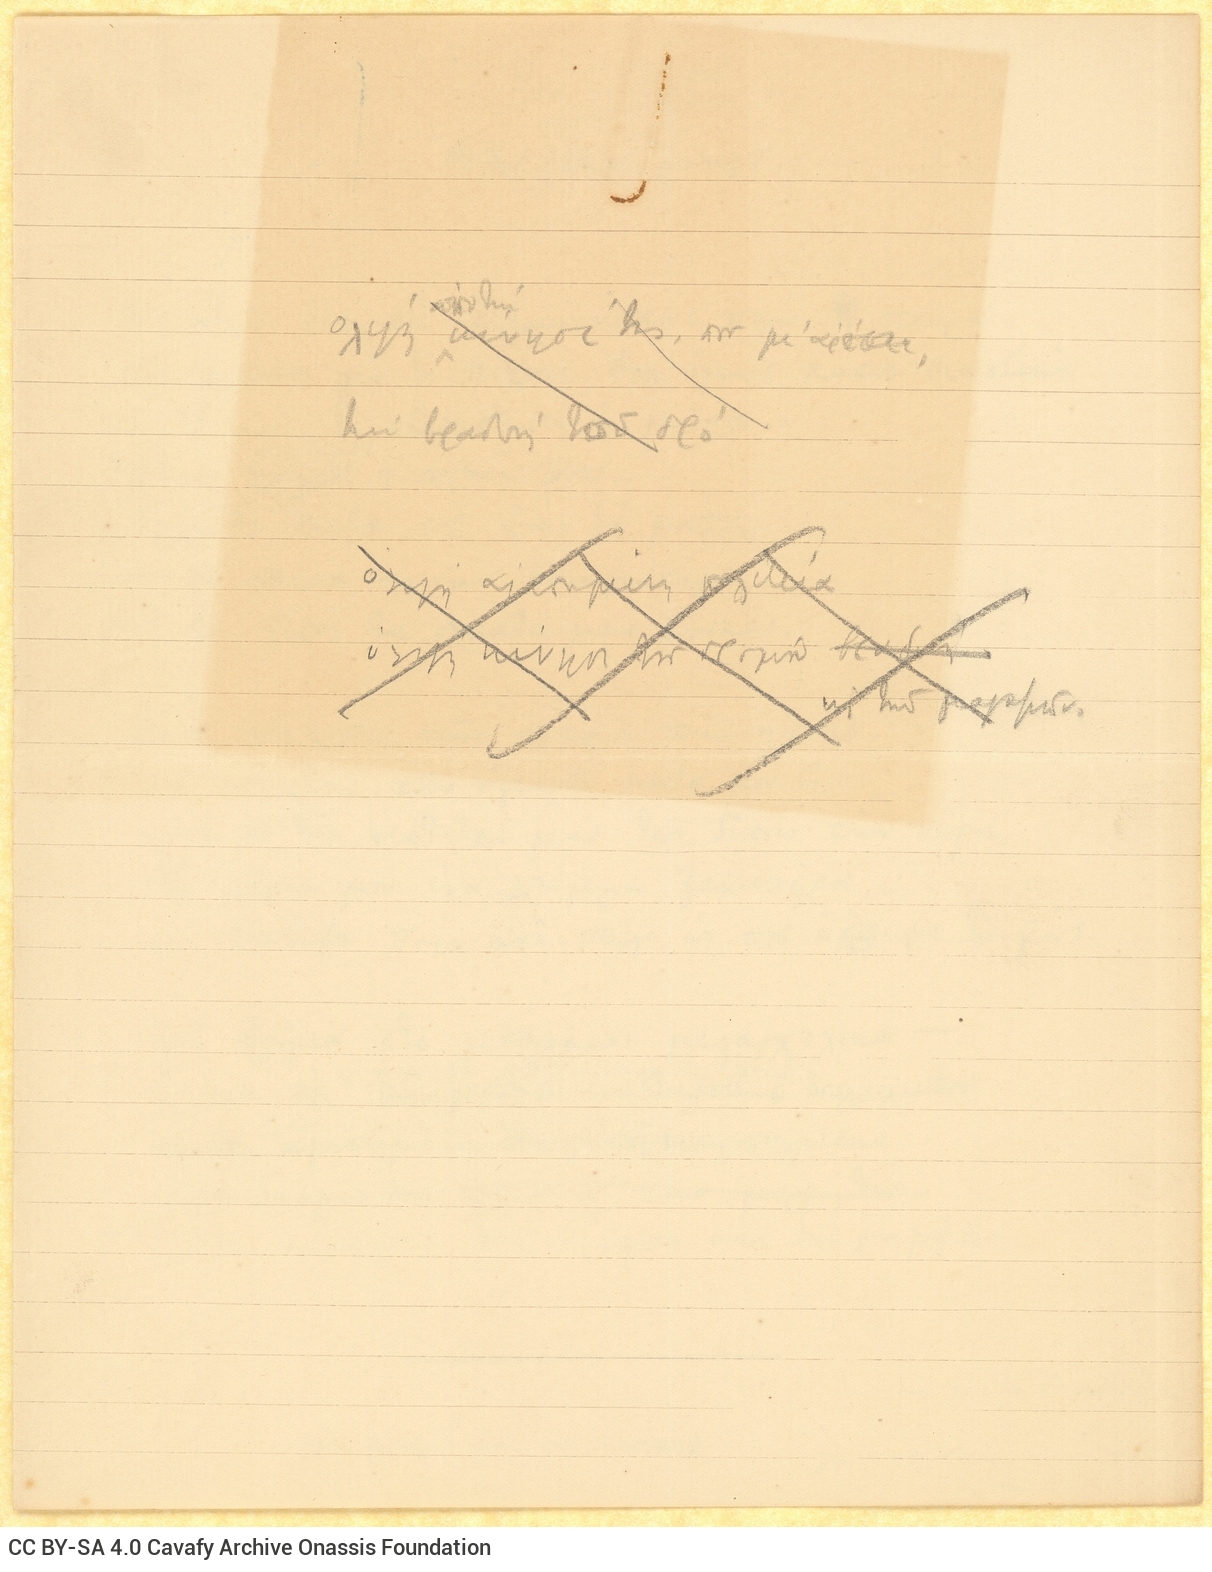 Χειρόγραφο του ποιήματος «Αλεξανδρινόν» στην πρώτη σελίδα διαγρα�